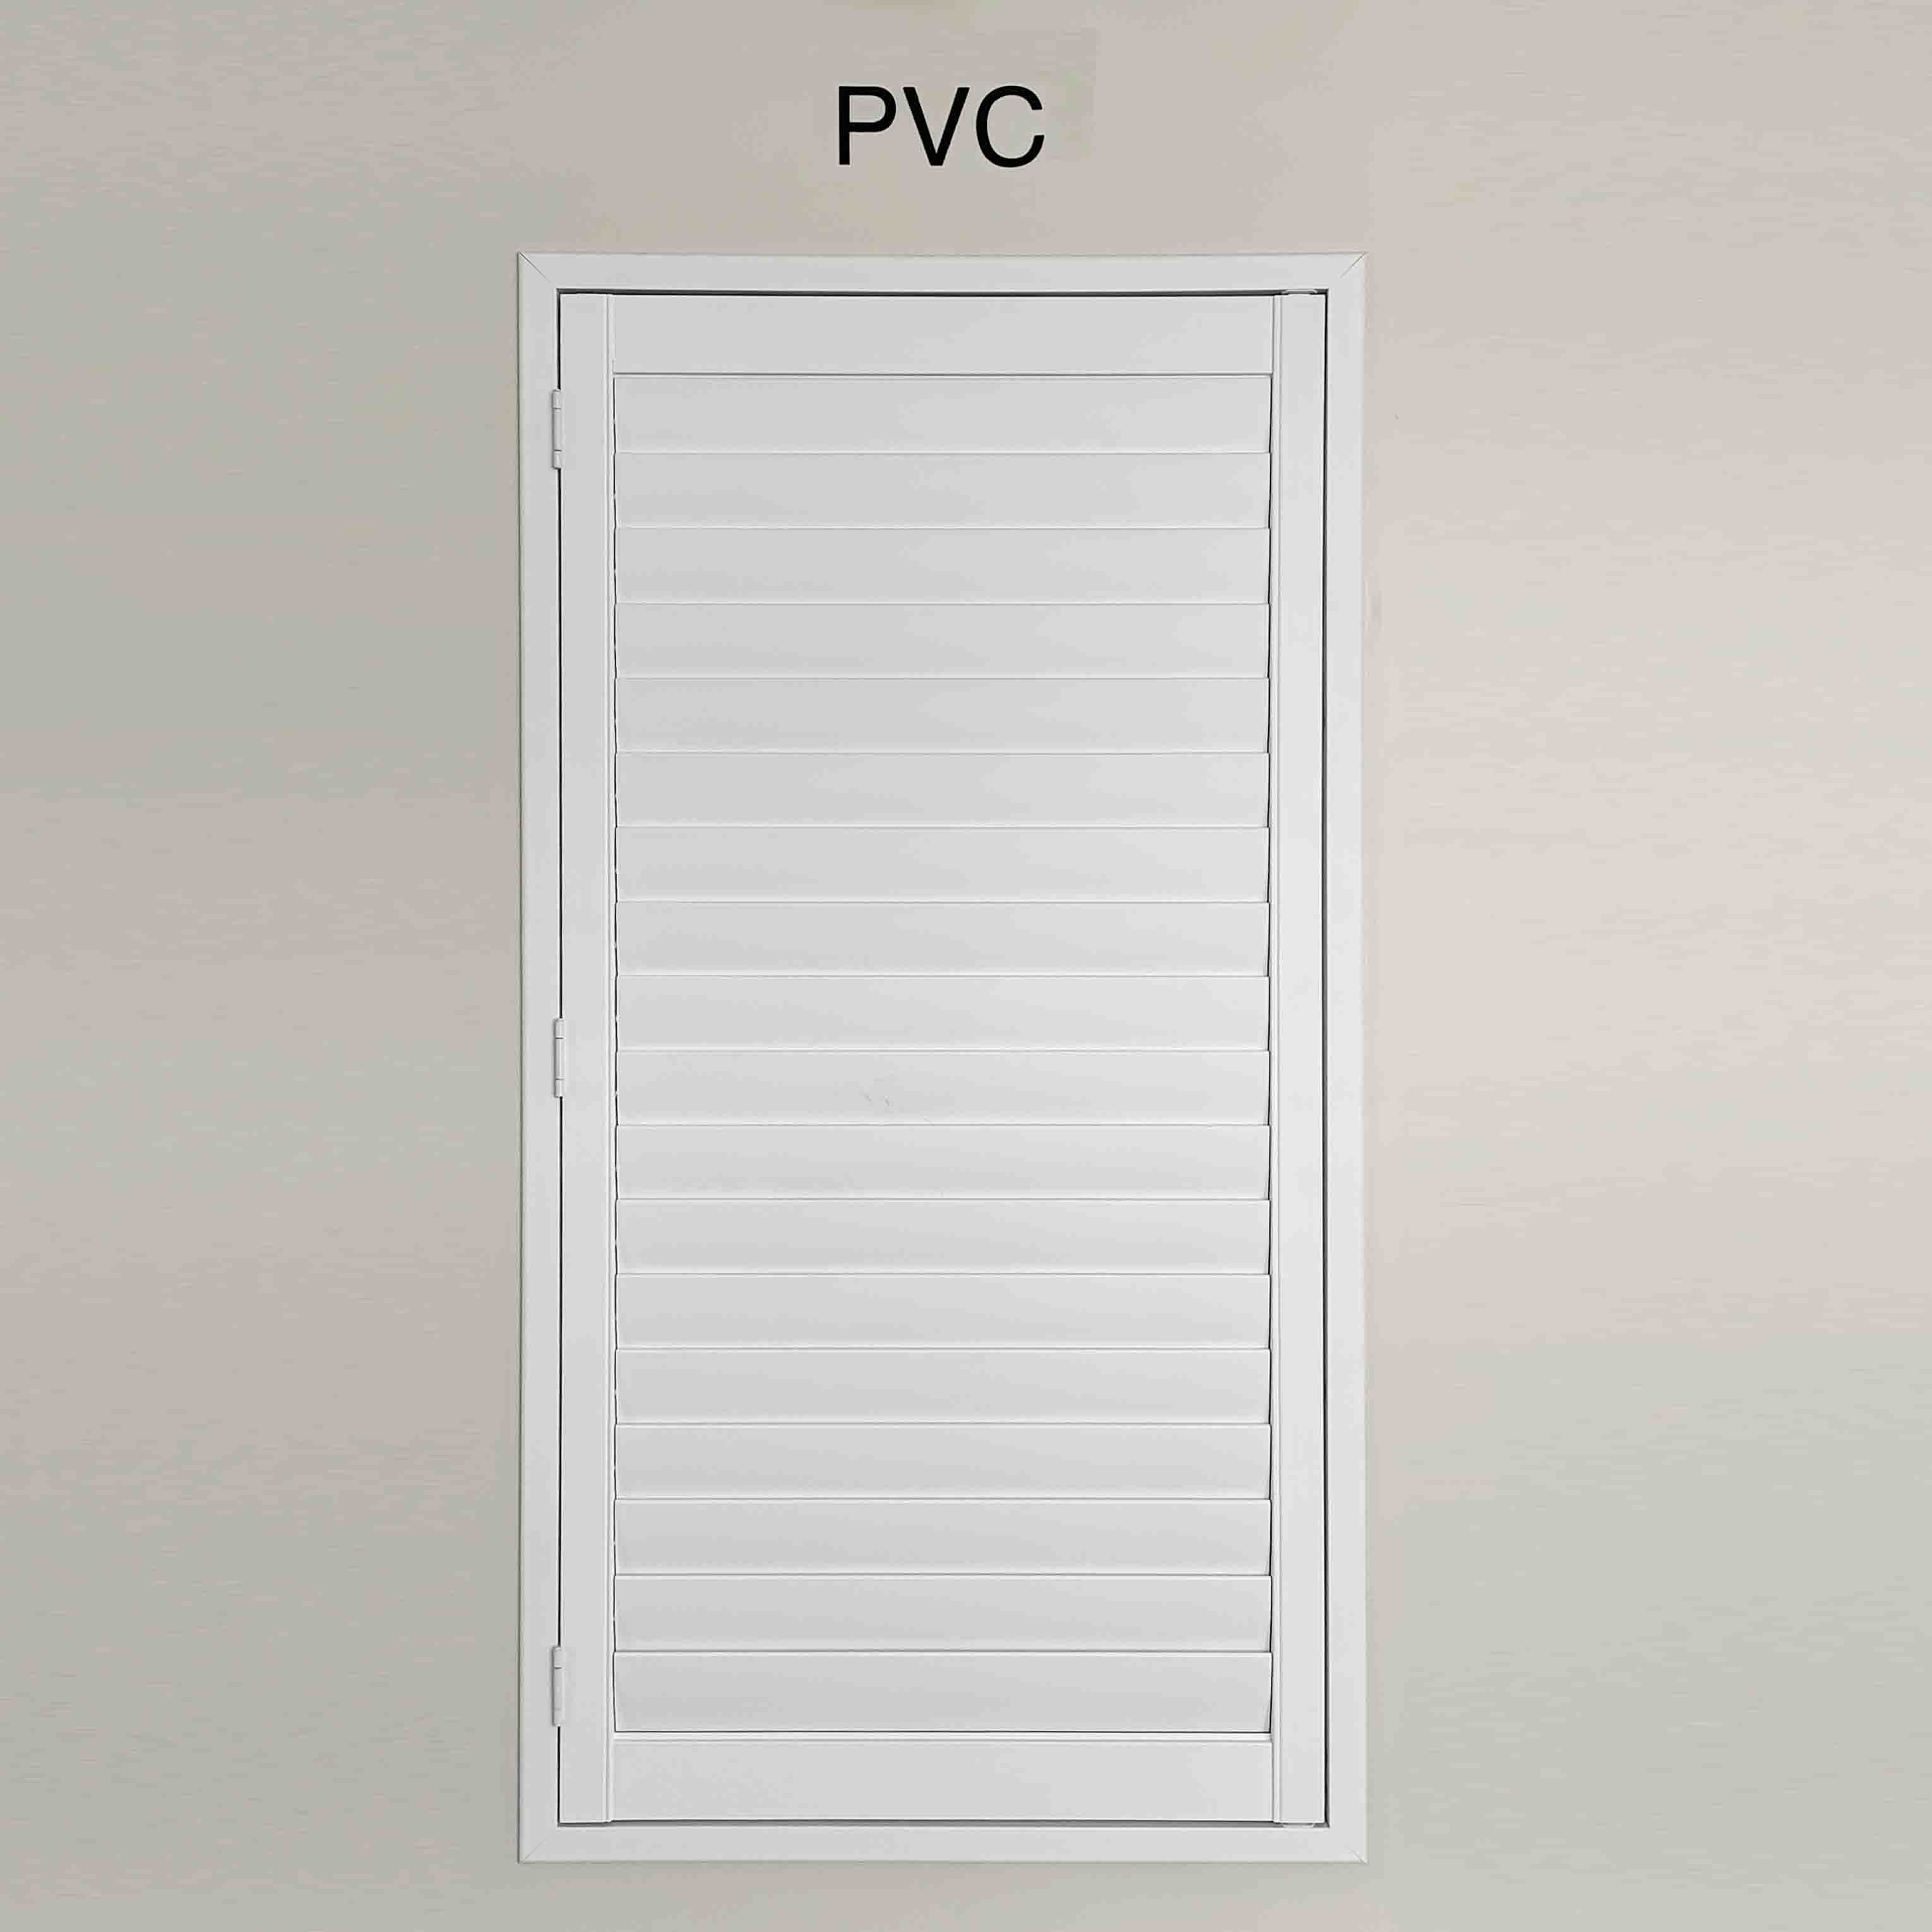 PVC window shutter,huasheng shutter factory